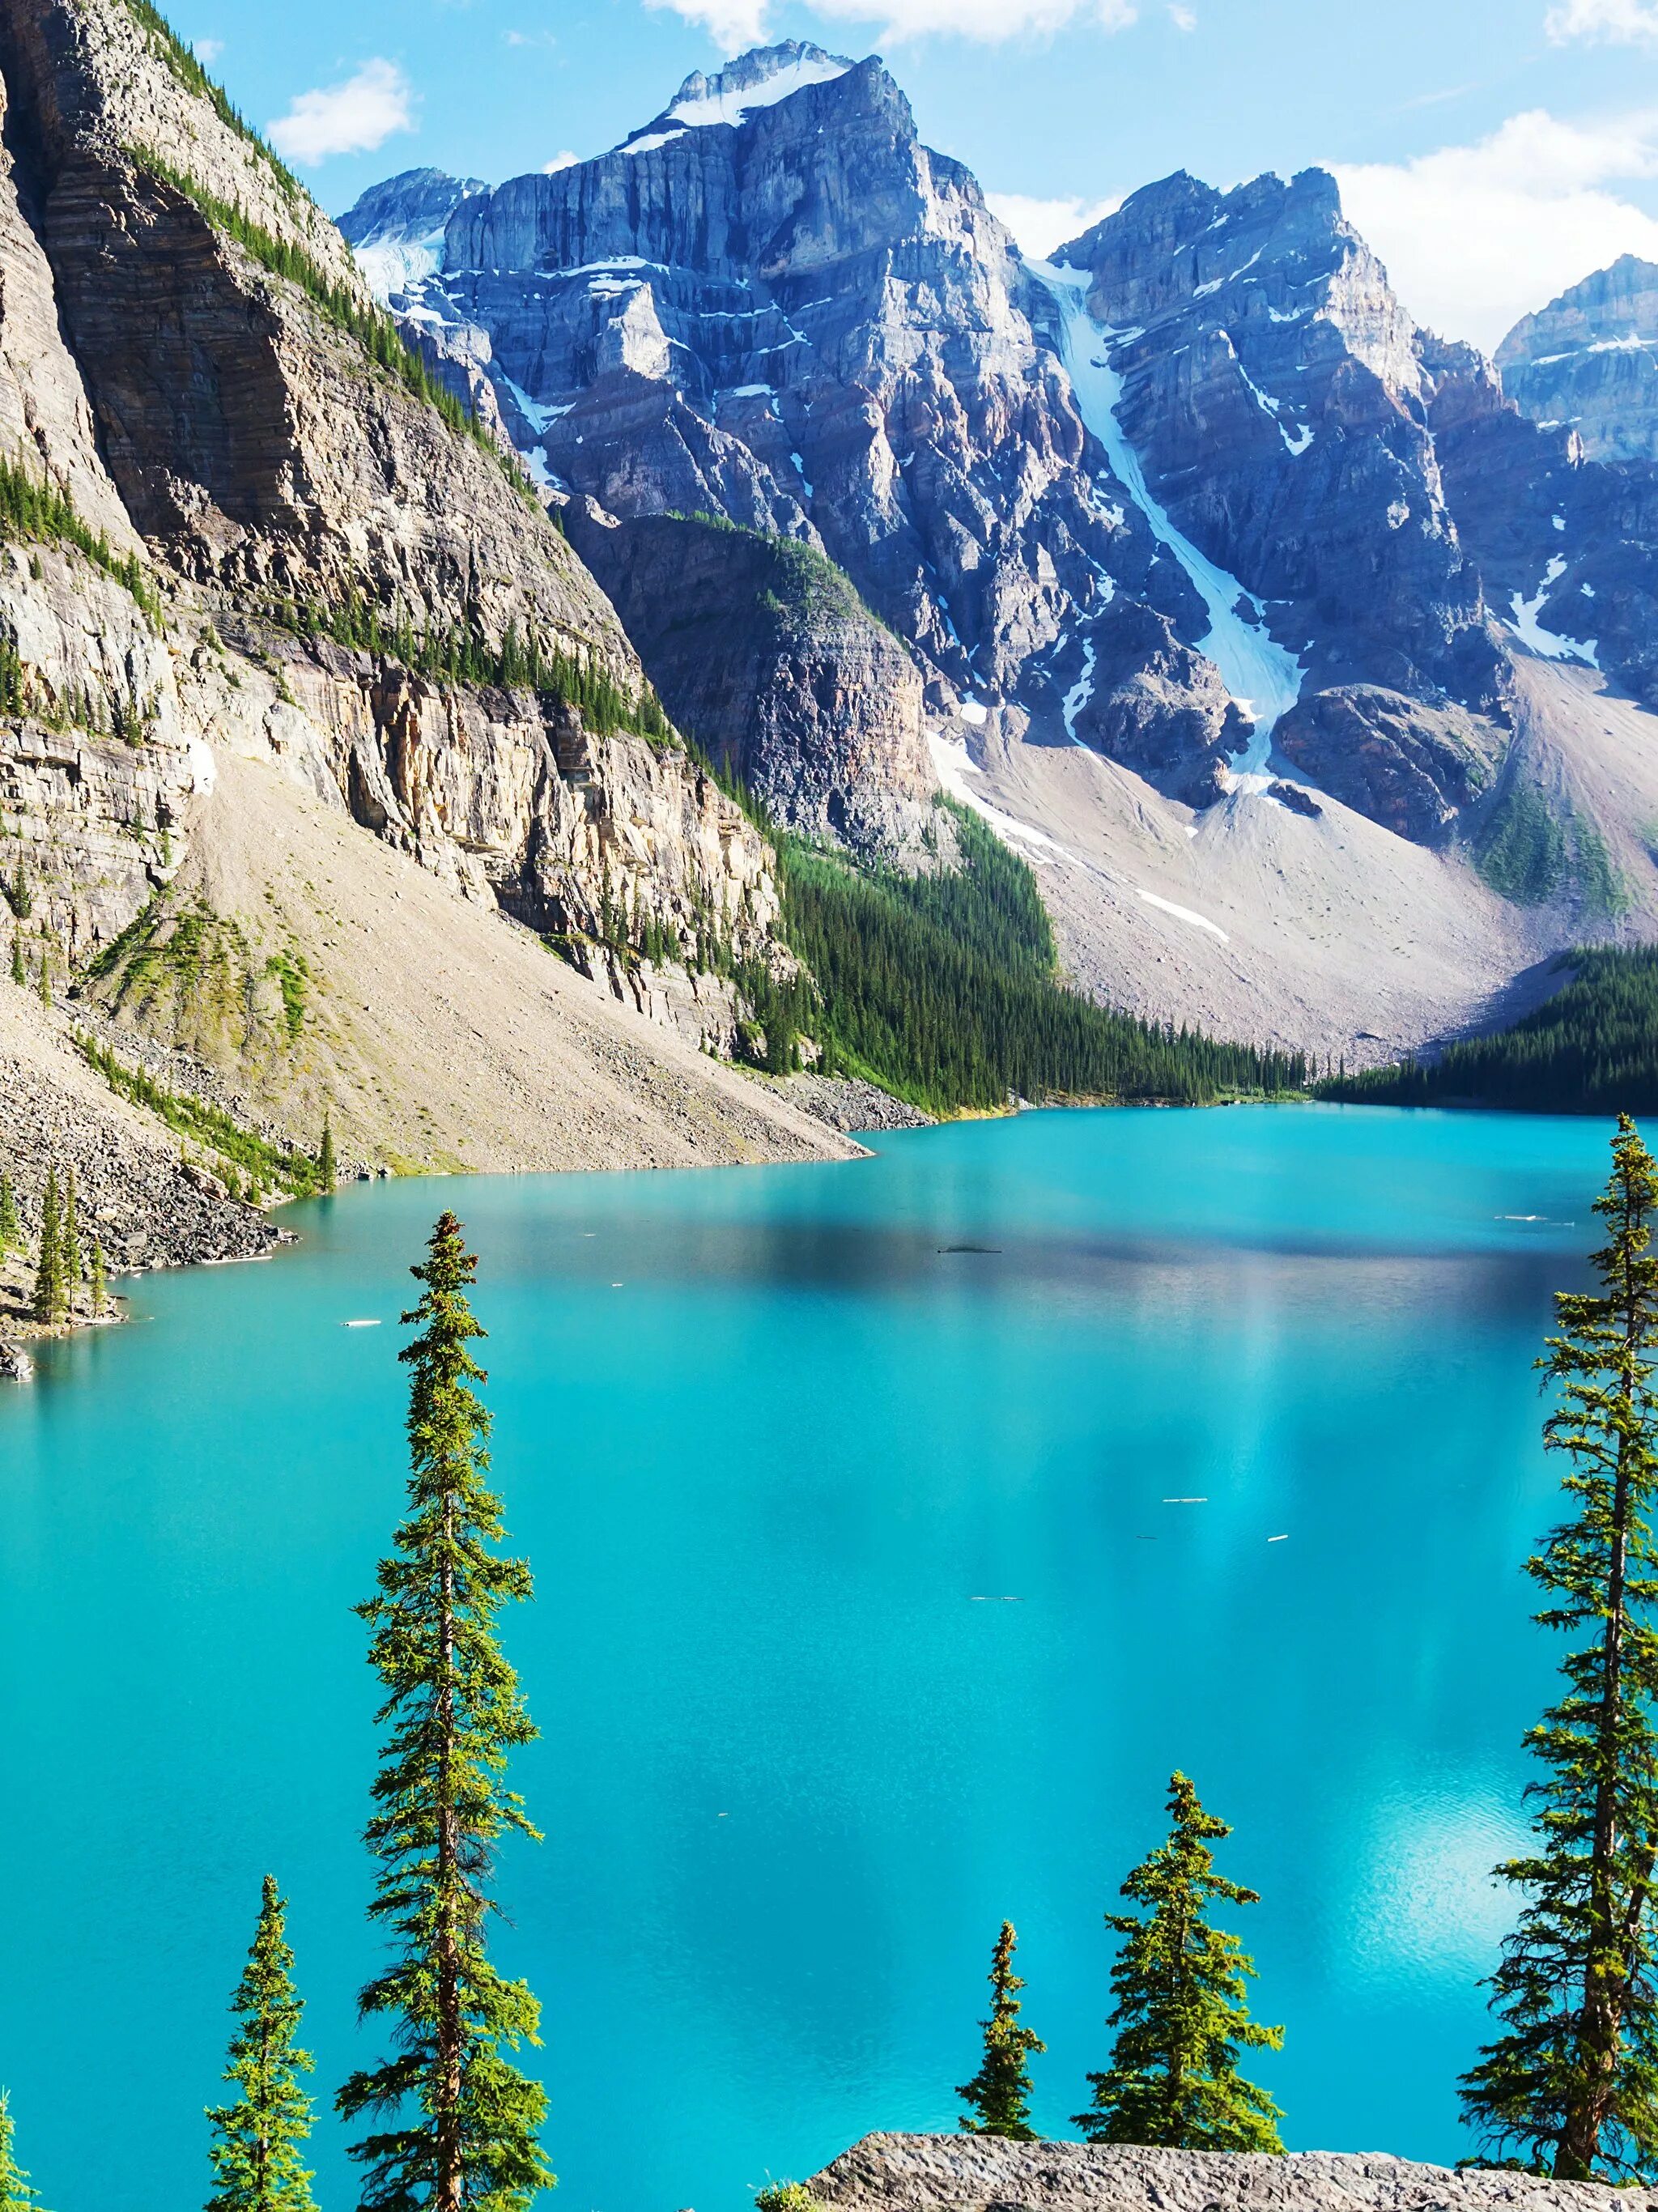 Заставка на телефон природа вертикальные. Озеро Морейн в Канаде. Бан акк фф. Озеро в горах.